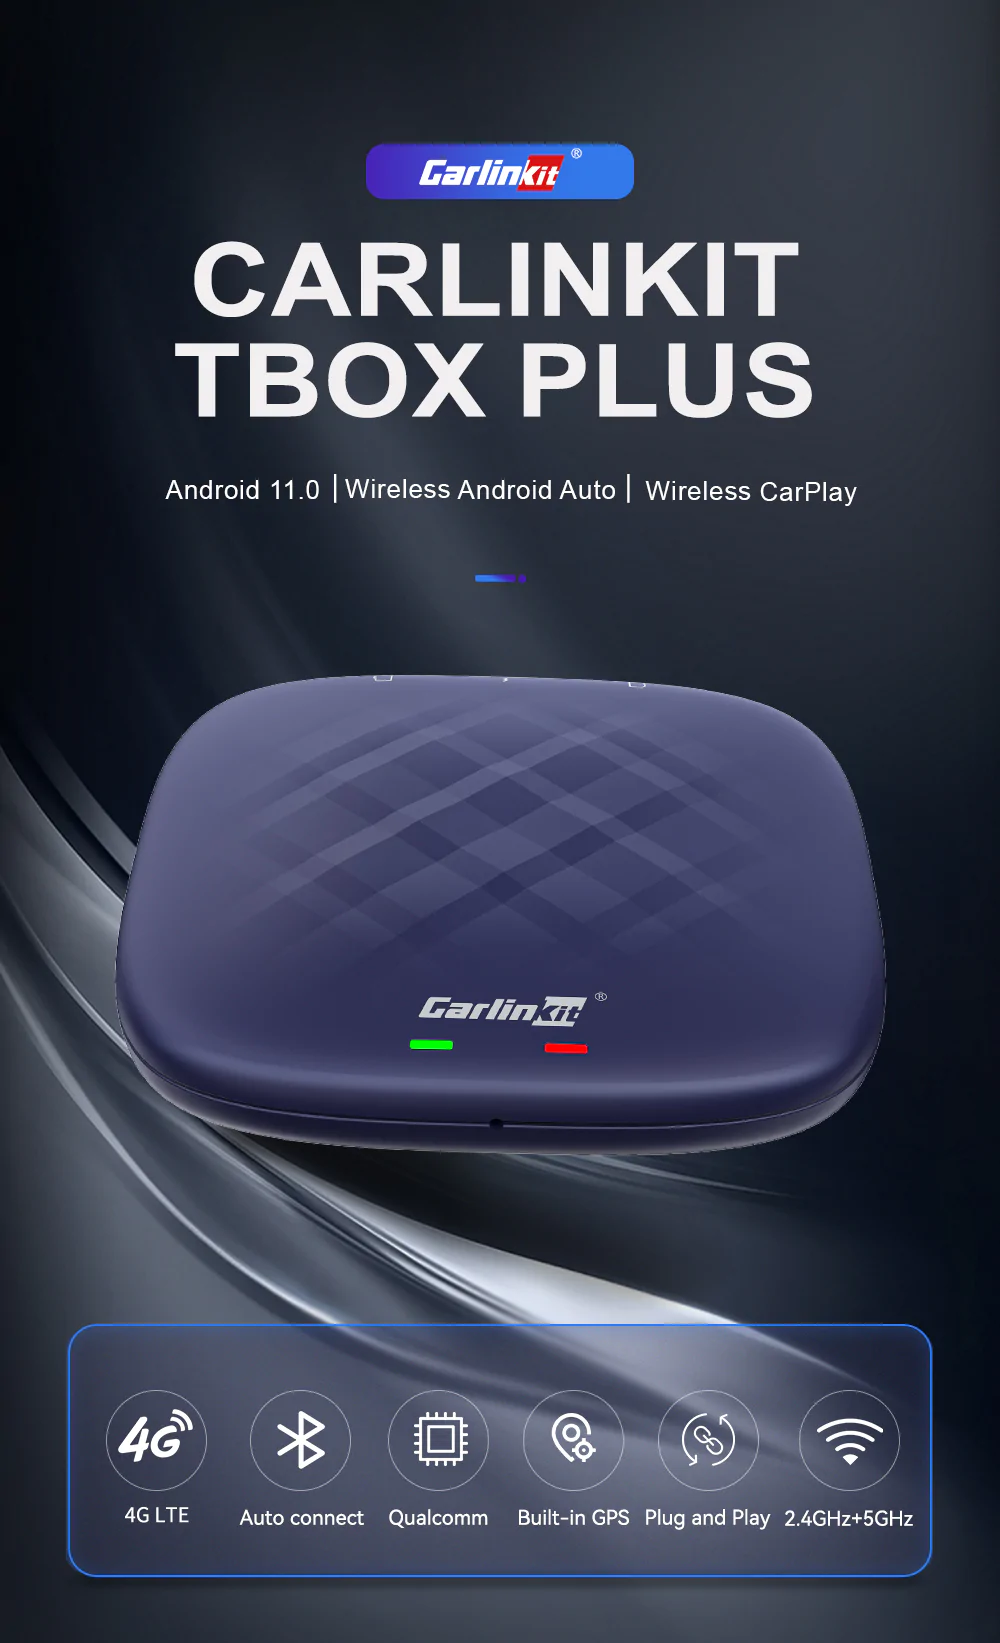 Carlinkit TBox Plus, phiên bản mới nhất sử dụng chip Snapdragon 665, hệ điều hành Android 11, hiệu năng cao